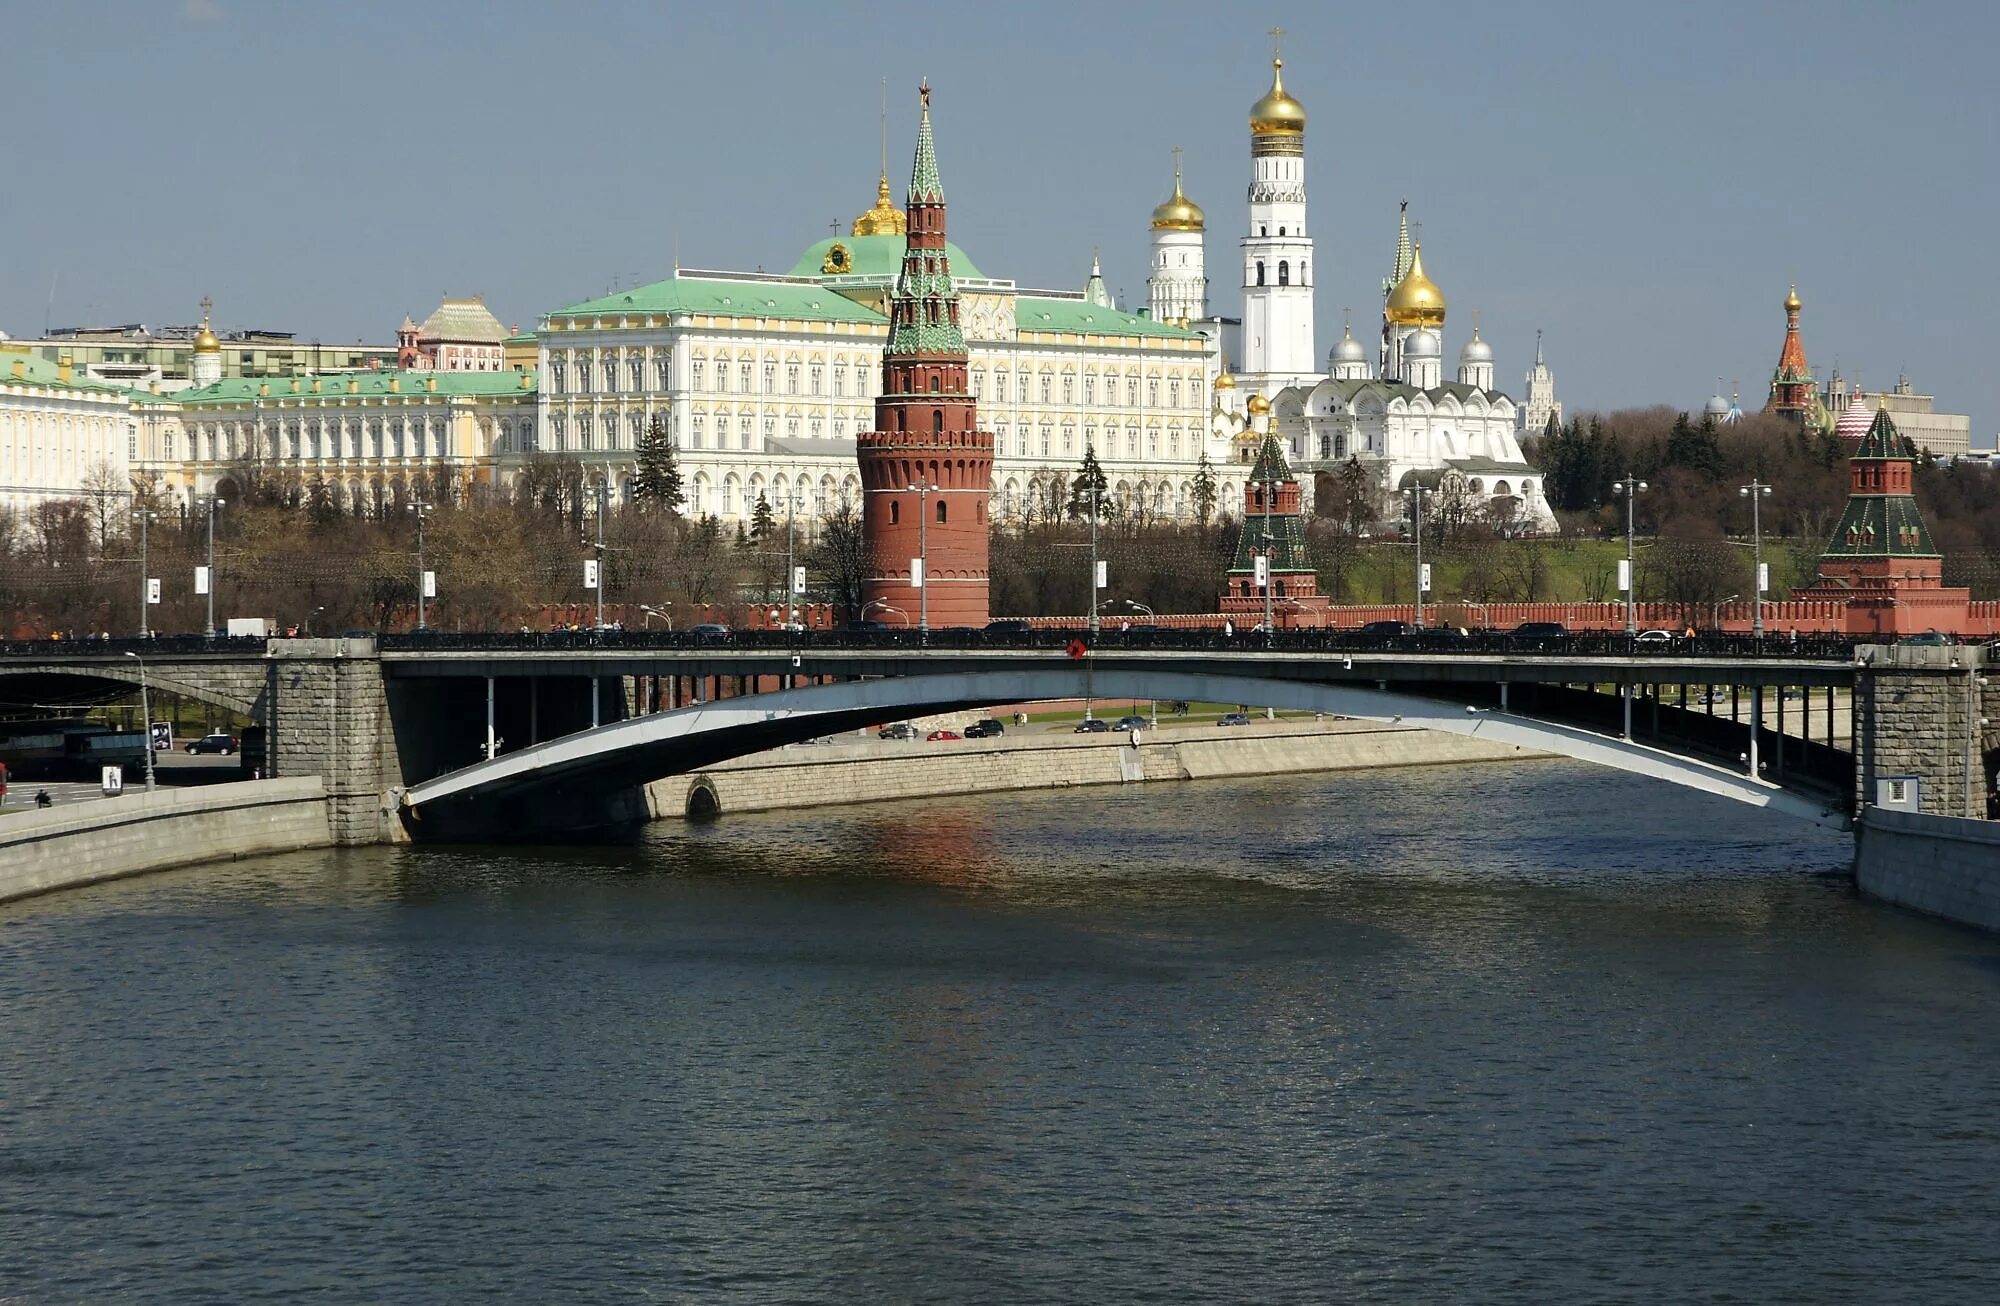 Мост на Москве реке у Кремля. Кремлевская набережная большой каменный мост. Вид на Кремль с Москва реки. Москва вид с моста на Кремль.